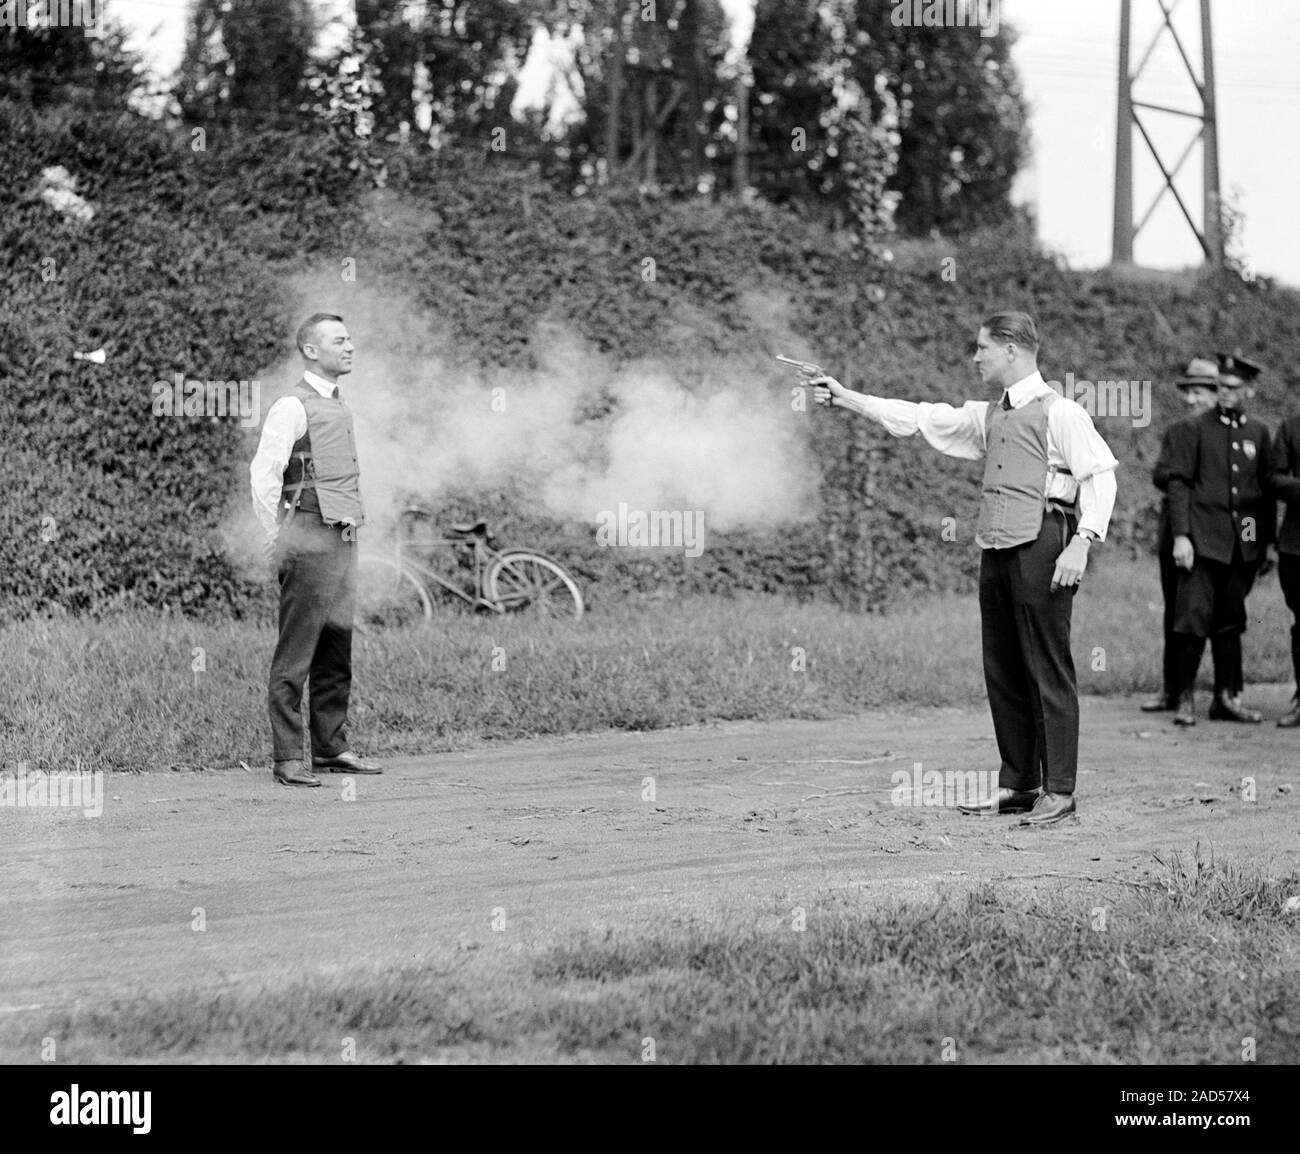 Schusssichere Weste Prüfung, 1920er Jahre. Revolver, feuerte eine schusssichere  Weste, auf der linken Seite getragen zu testen. Kugelsichere Westen sind  aus Materialien hergestellt, die Stockfotografie - Alamy